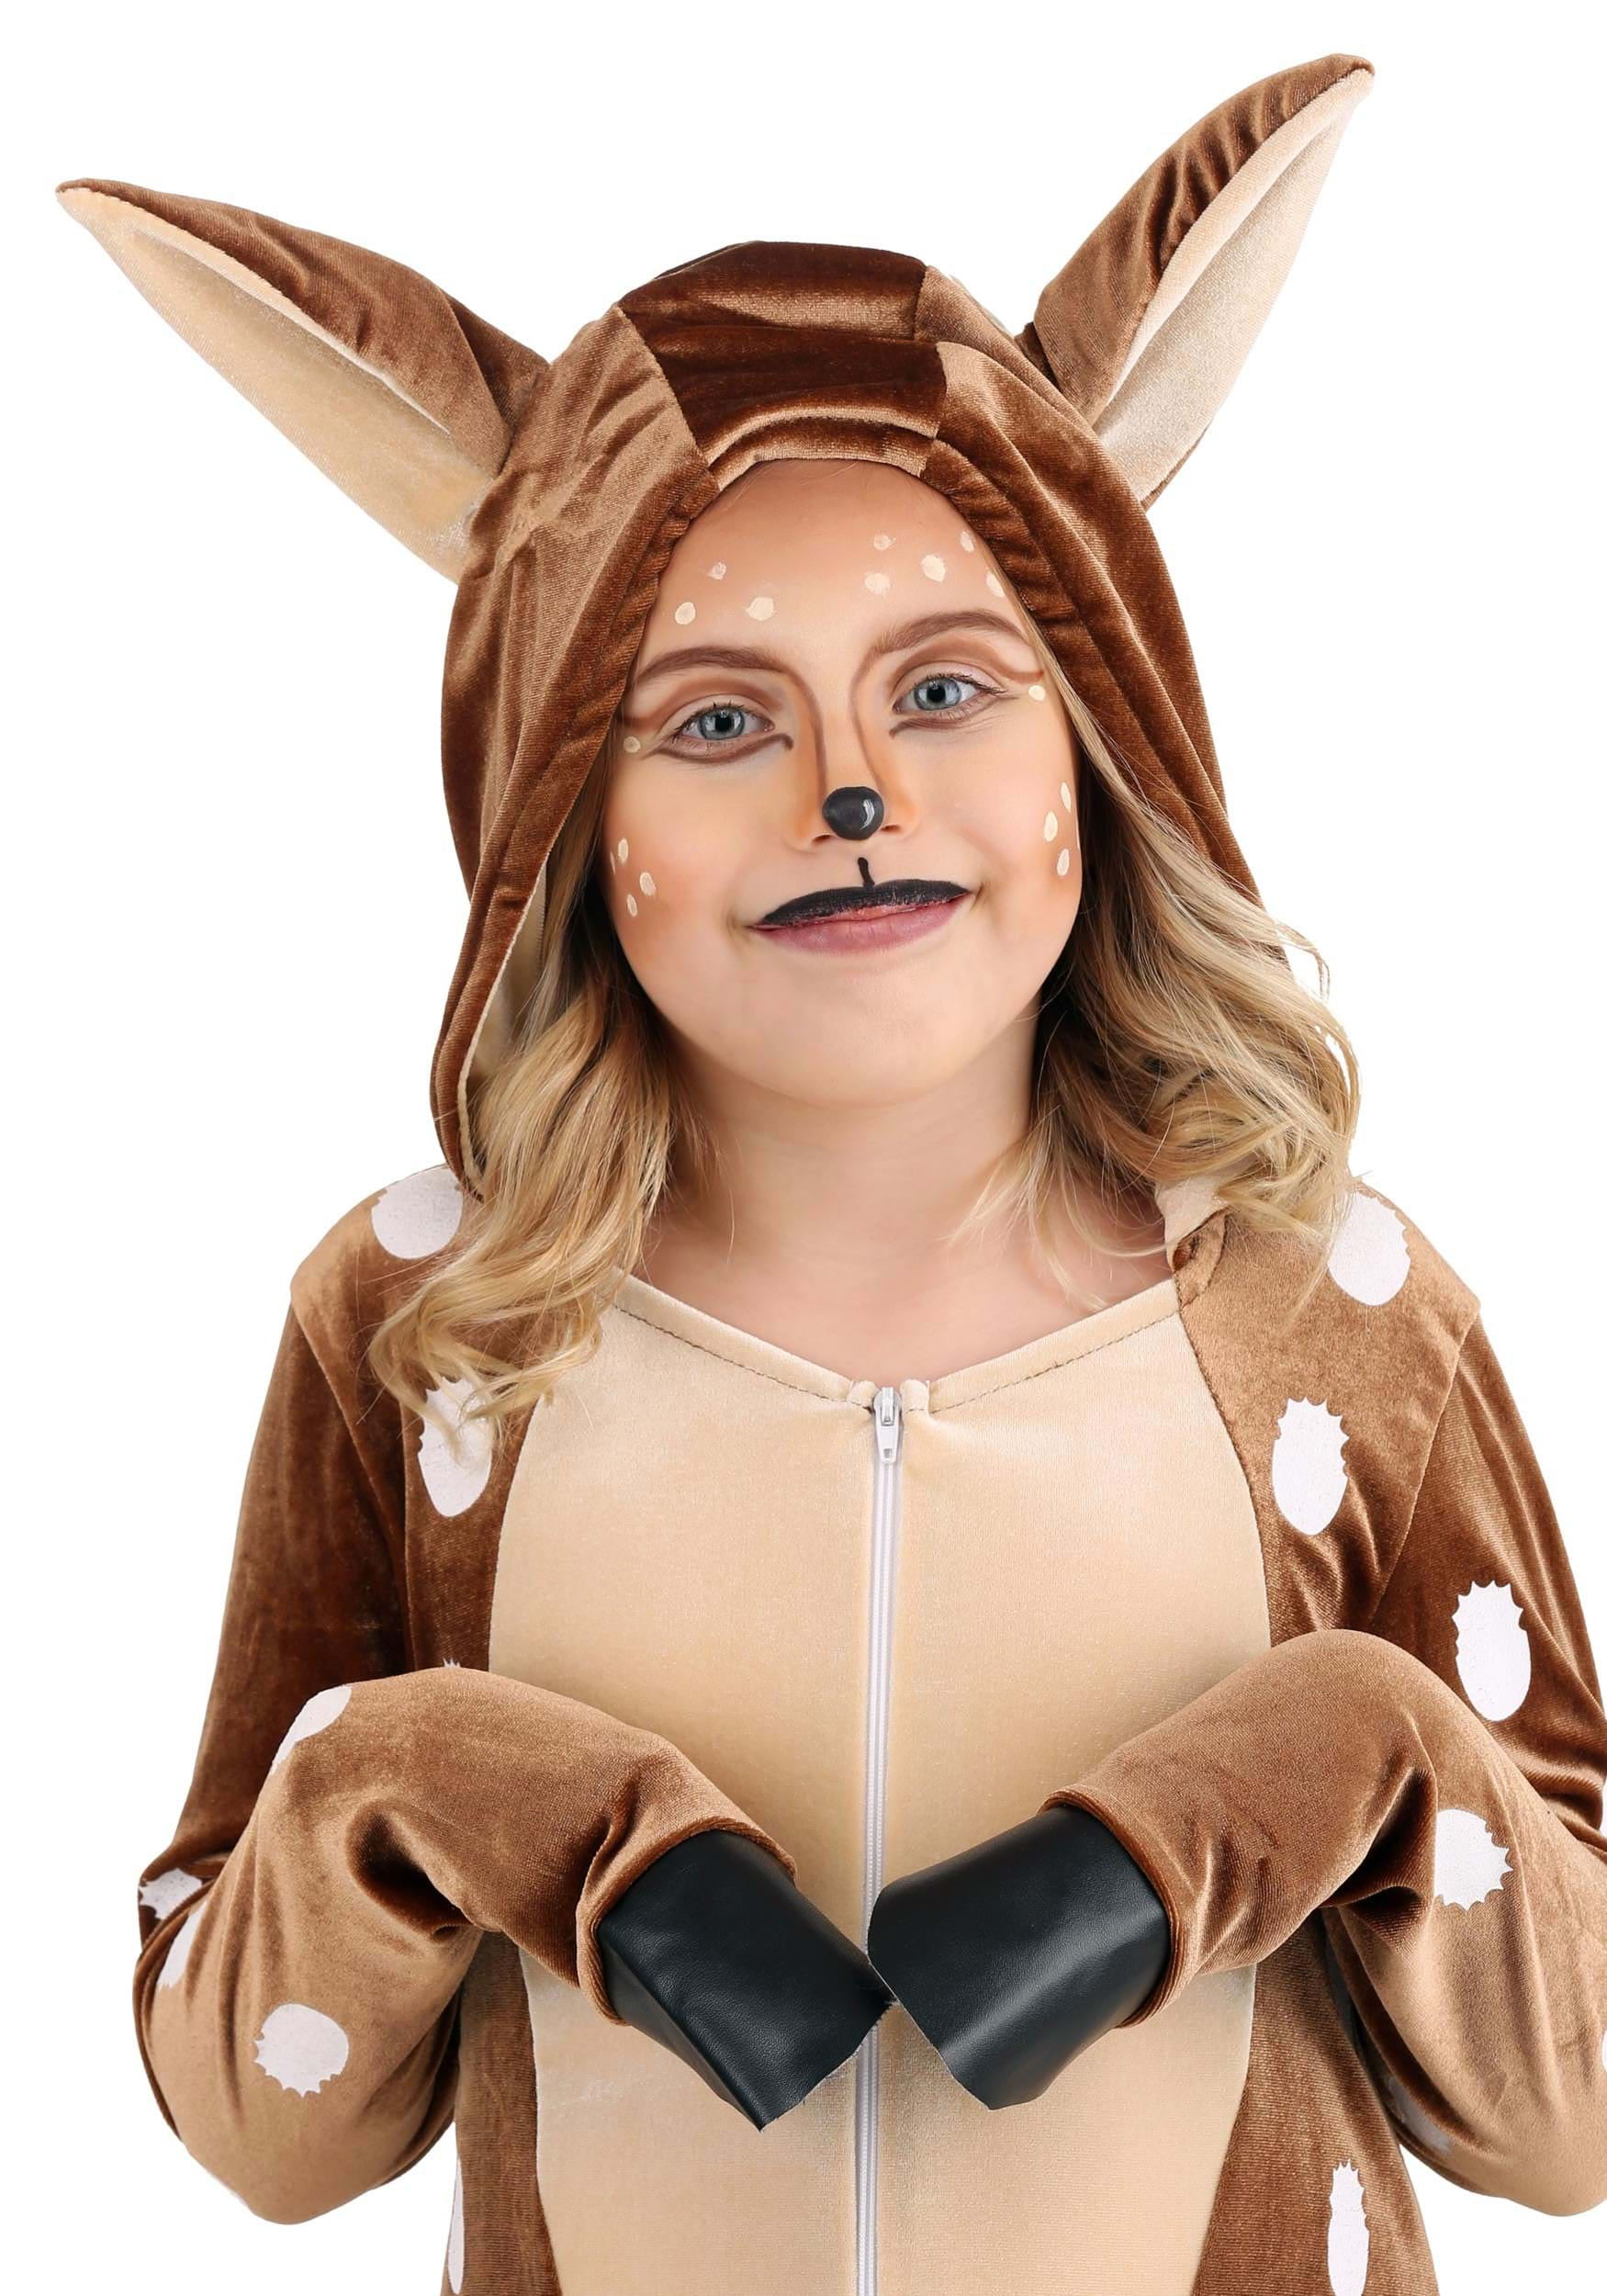 Eve Også at lege Deer Costume Makeup Kit - Walmart.com